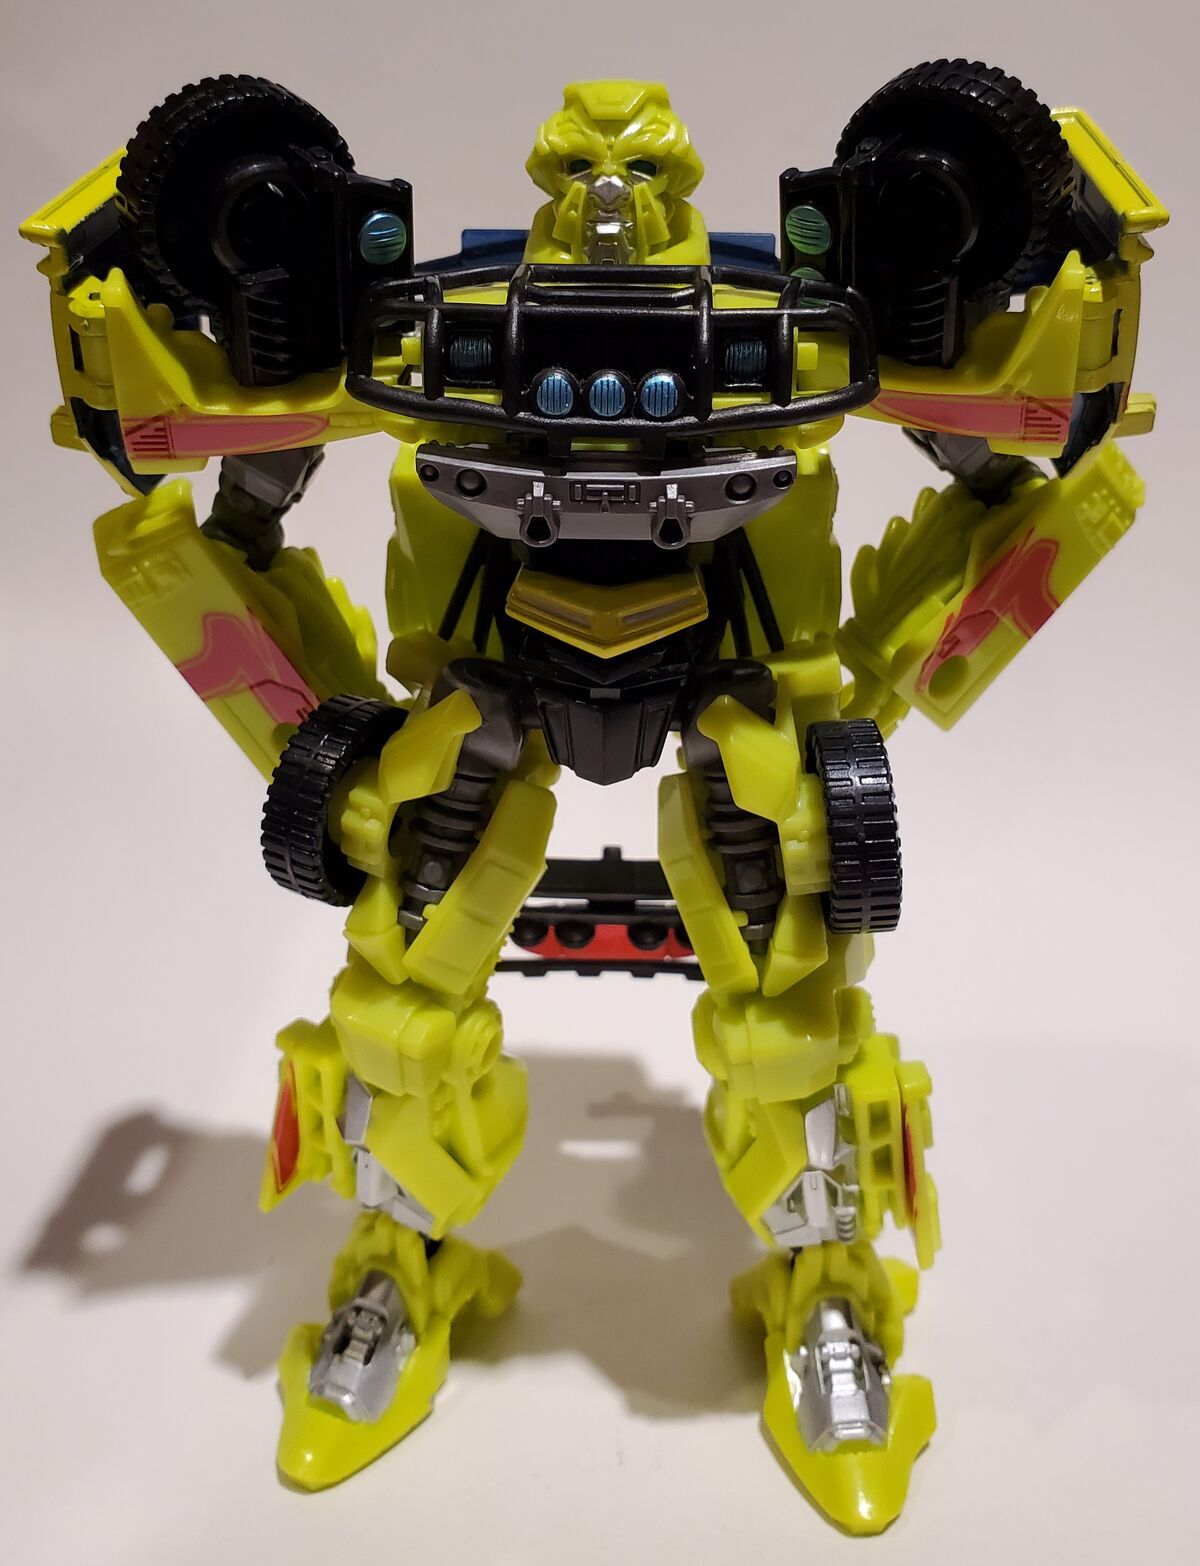 Transformers Studio Series SS 41 Scrapmetal Deluxe Class